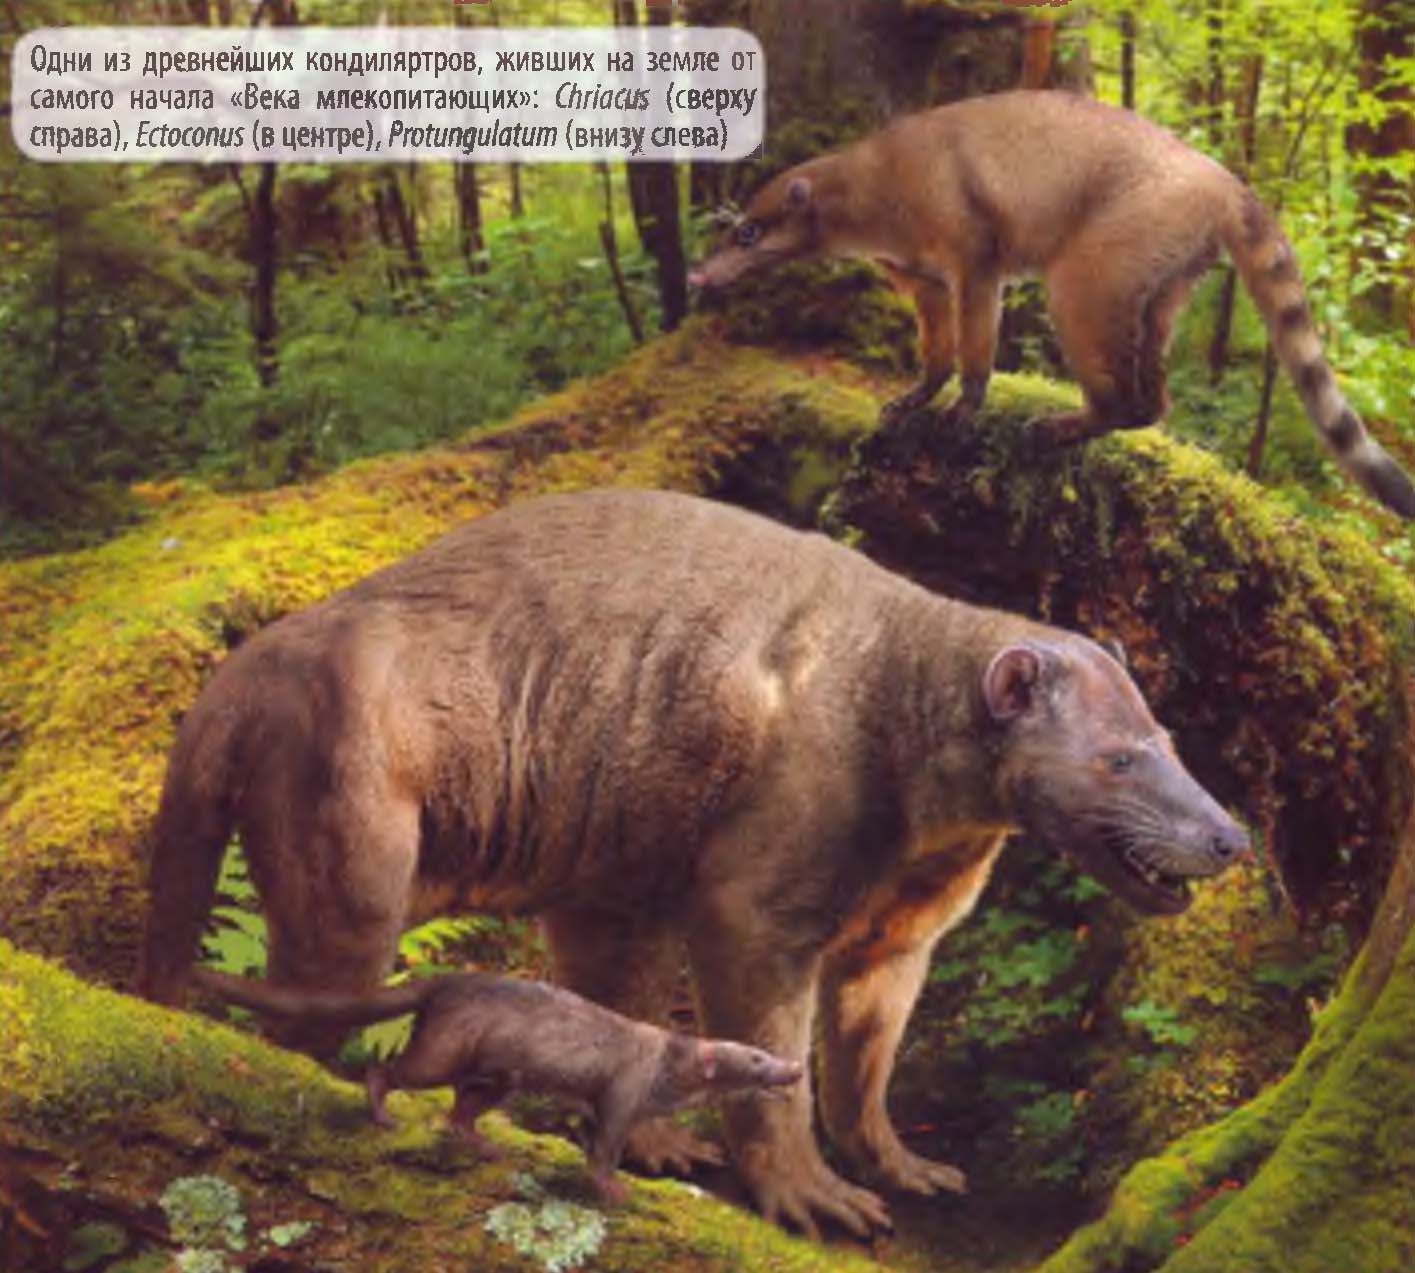 Одни из древнейших кондиляртров, живших на земле от самого начала «Века млекопитающих»: Chriacus (сверху справа), Ectoconus (в центре), Protungulatum (внизу слева).